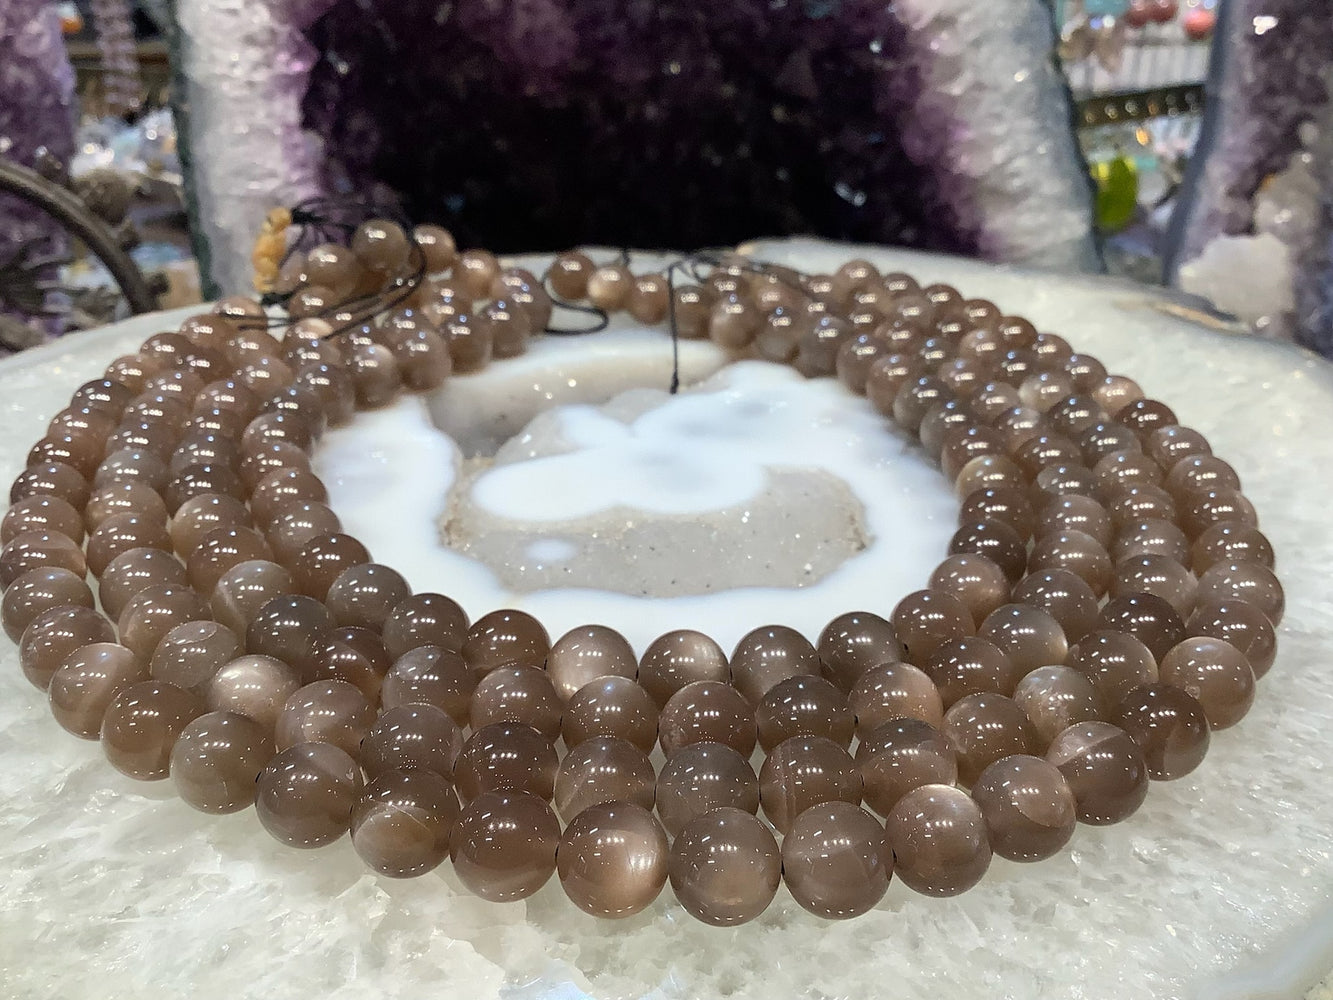 Stunning Chocolate Brown Moonstone Round Gemstone Beads - 10mm